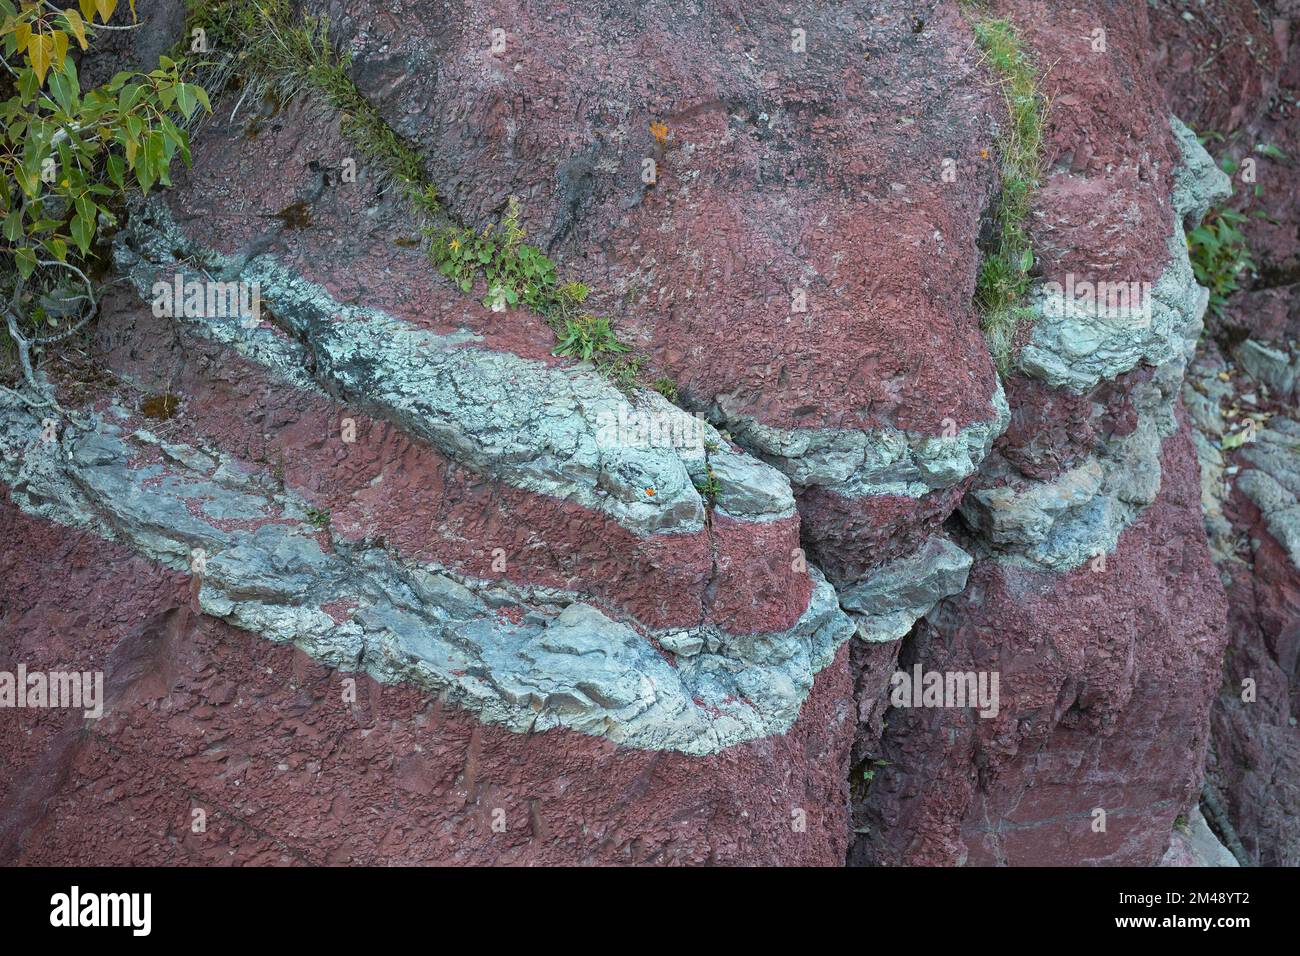 Argillite Sedimentgesteinsschichten im Red Rock Canyon, Waterton, Kanada. Die rote Farbe stammt aus oxidiertem Eisen. Die grünen Bänder enthalten nicht oxidiertes Eisen Stockfoto